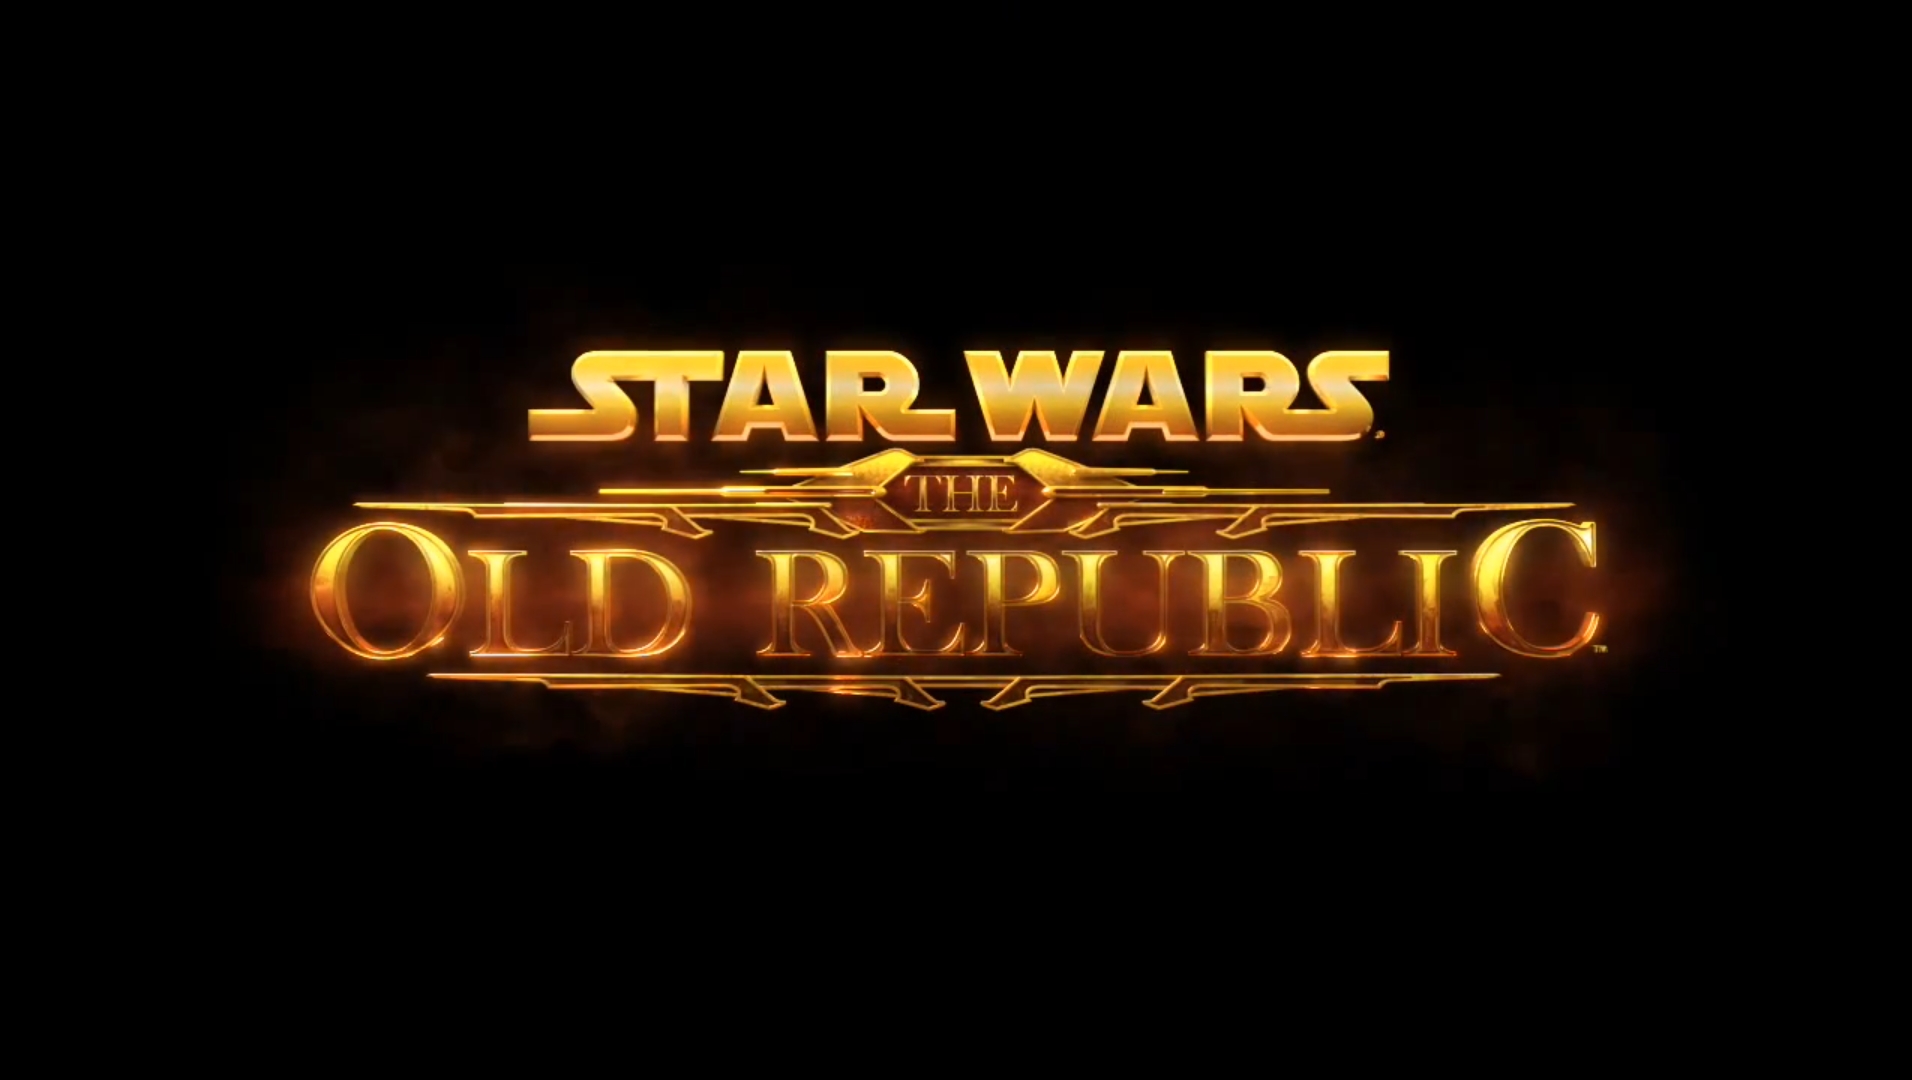 Star Wars: The old Republic – Neuer Trailer ‘Herrschaft’ zu Galactic Starfighter vorgestellt